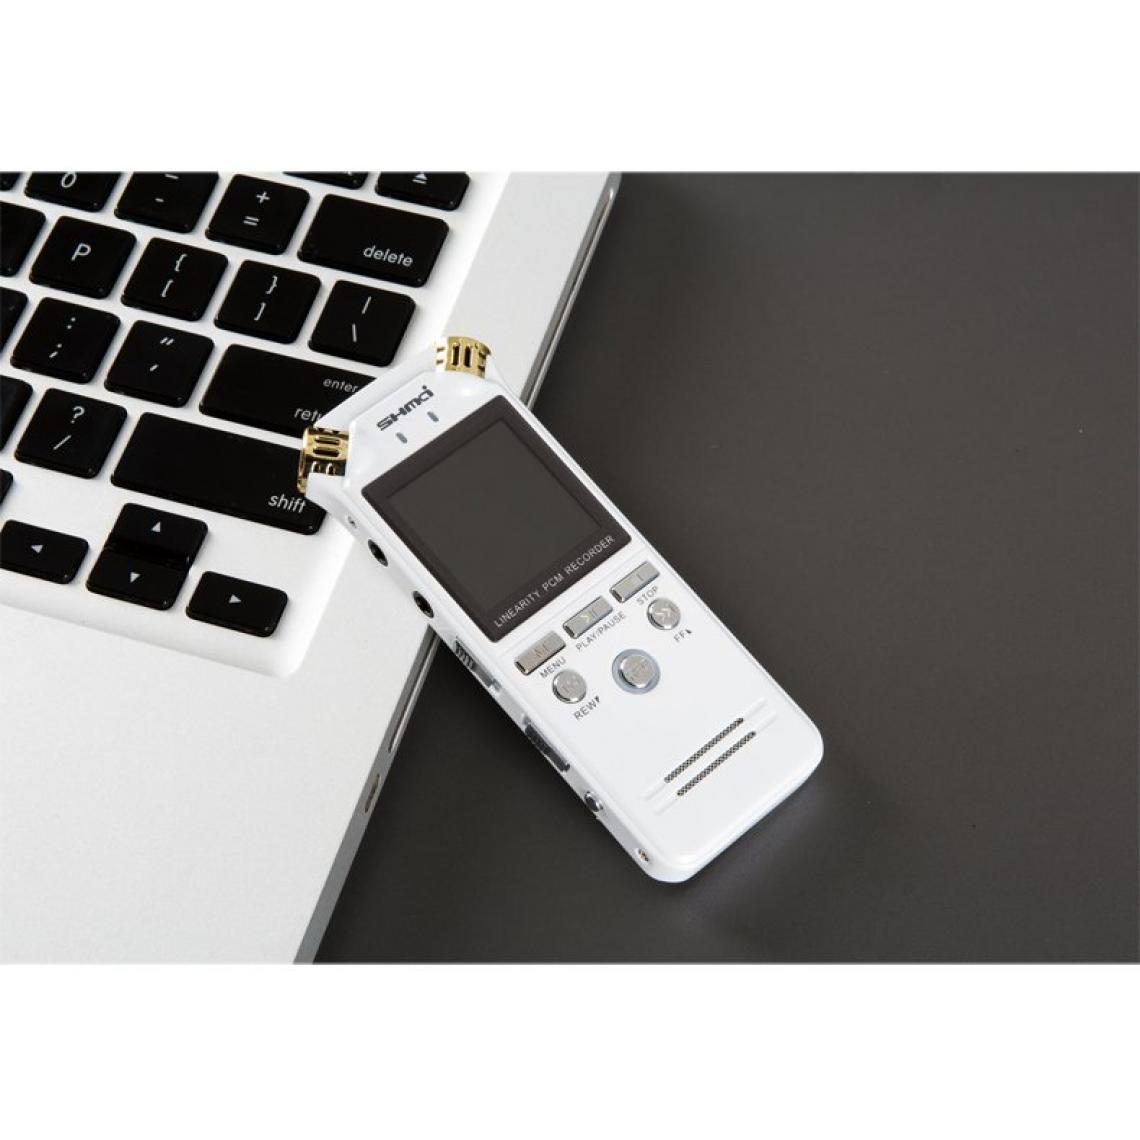 Universal - Magnétophone à activation vocale numérique de 1 536 kpps Mini choc ADC Contrôle du bruit Magnétophone audio Lecteur MP3 - Enregistreur audio numérique